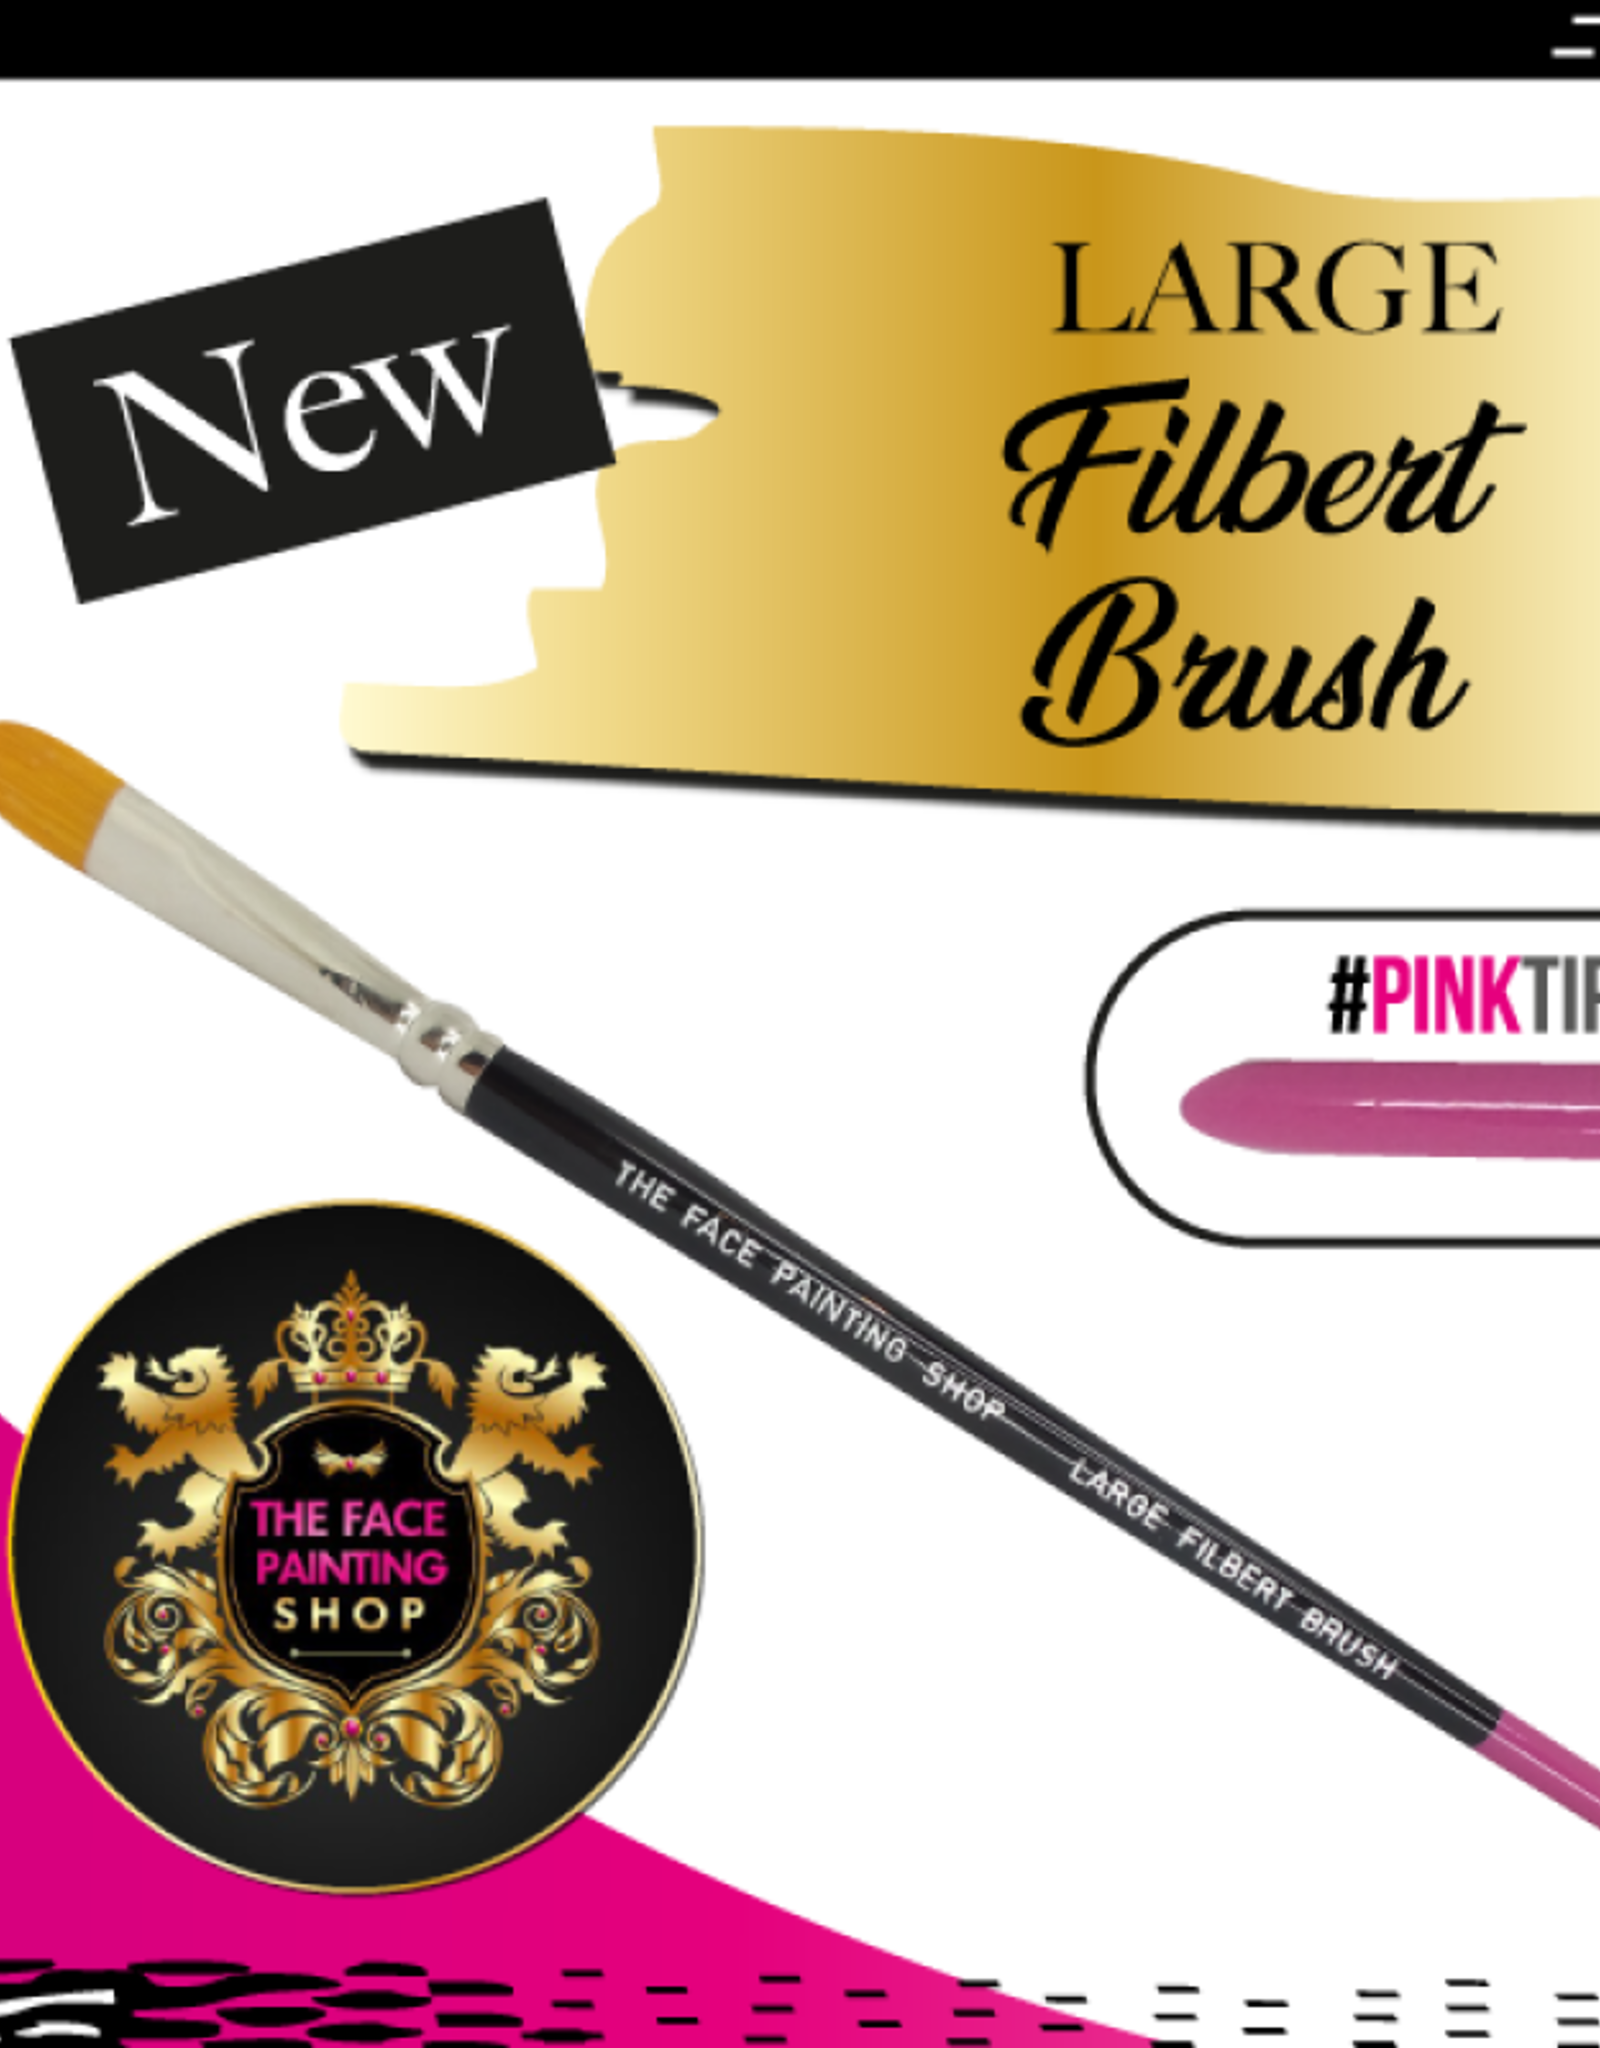 Pink Tips Pink Tips Brush - large filbert brush